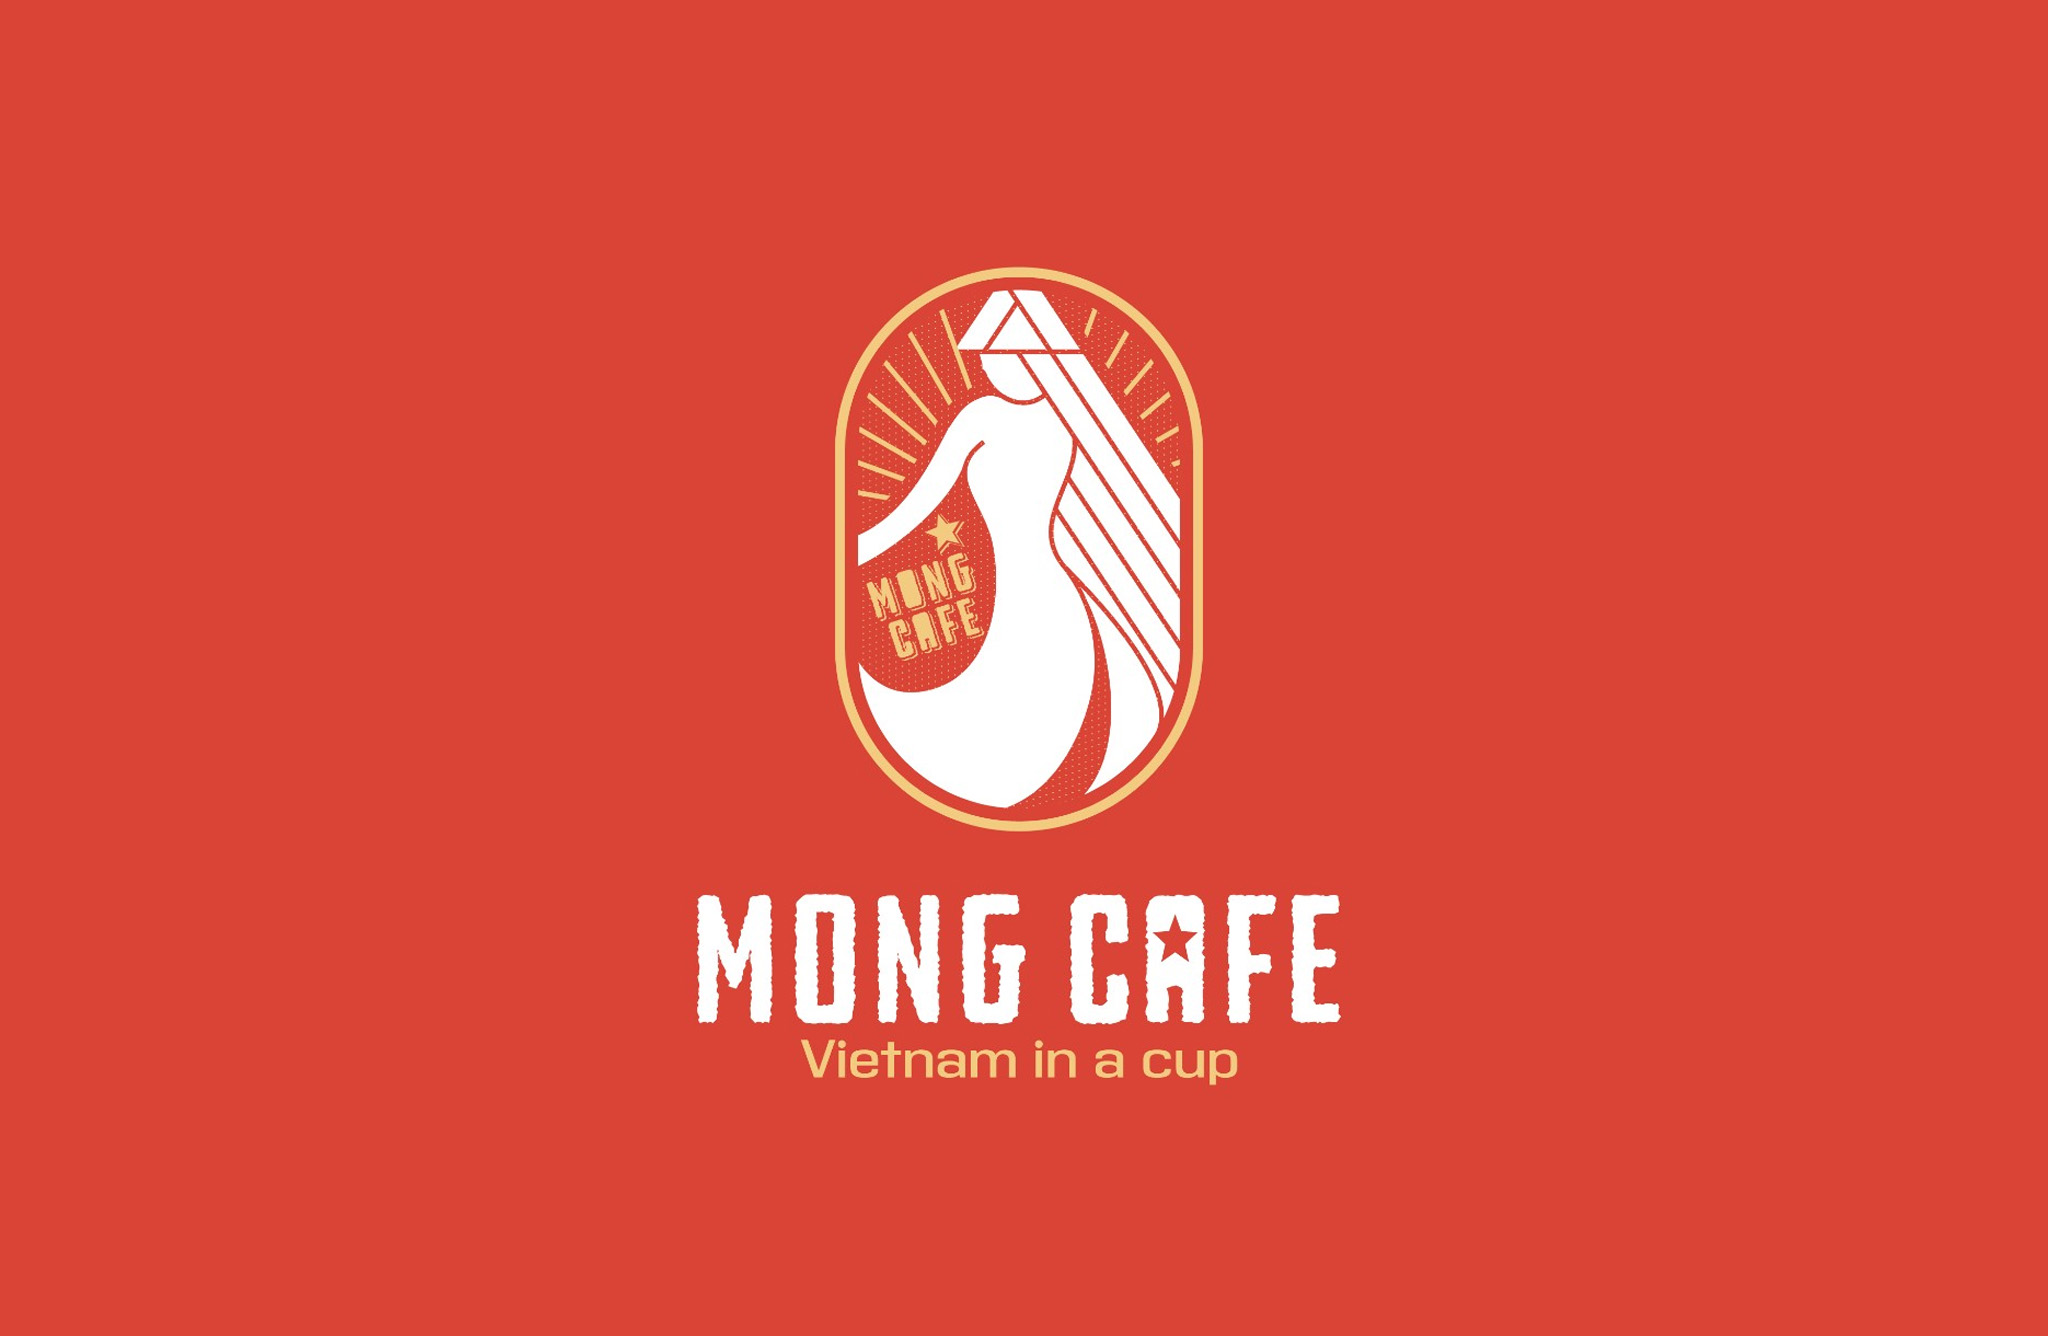 THIẾT KẾ BỘ NHẬN DIỆN MONG CAFE